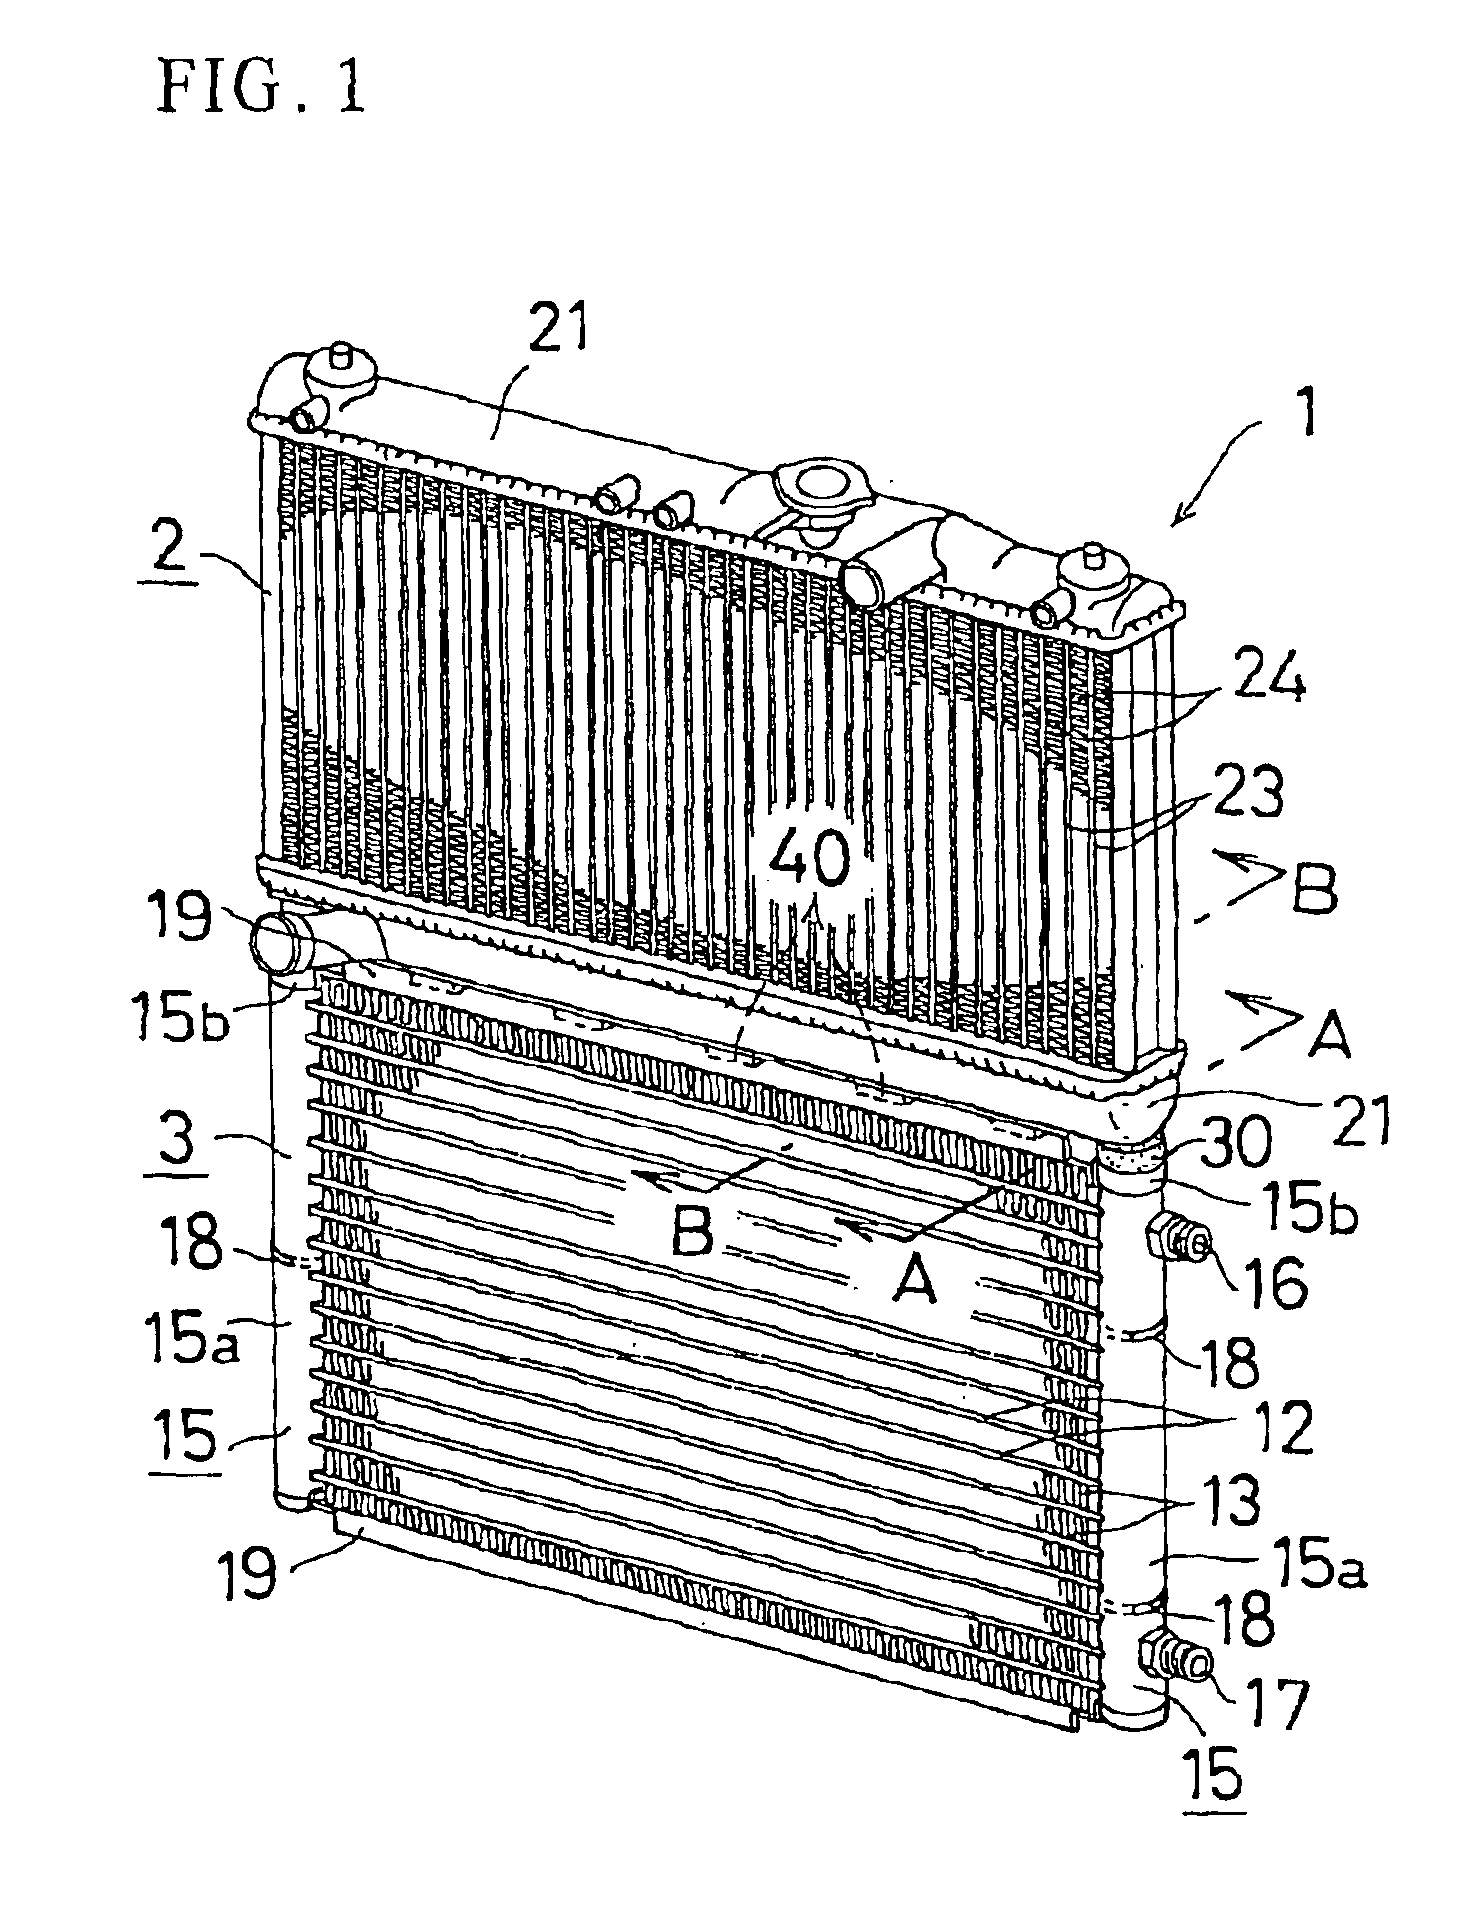 Integrated heat exchanger